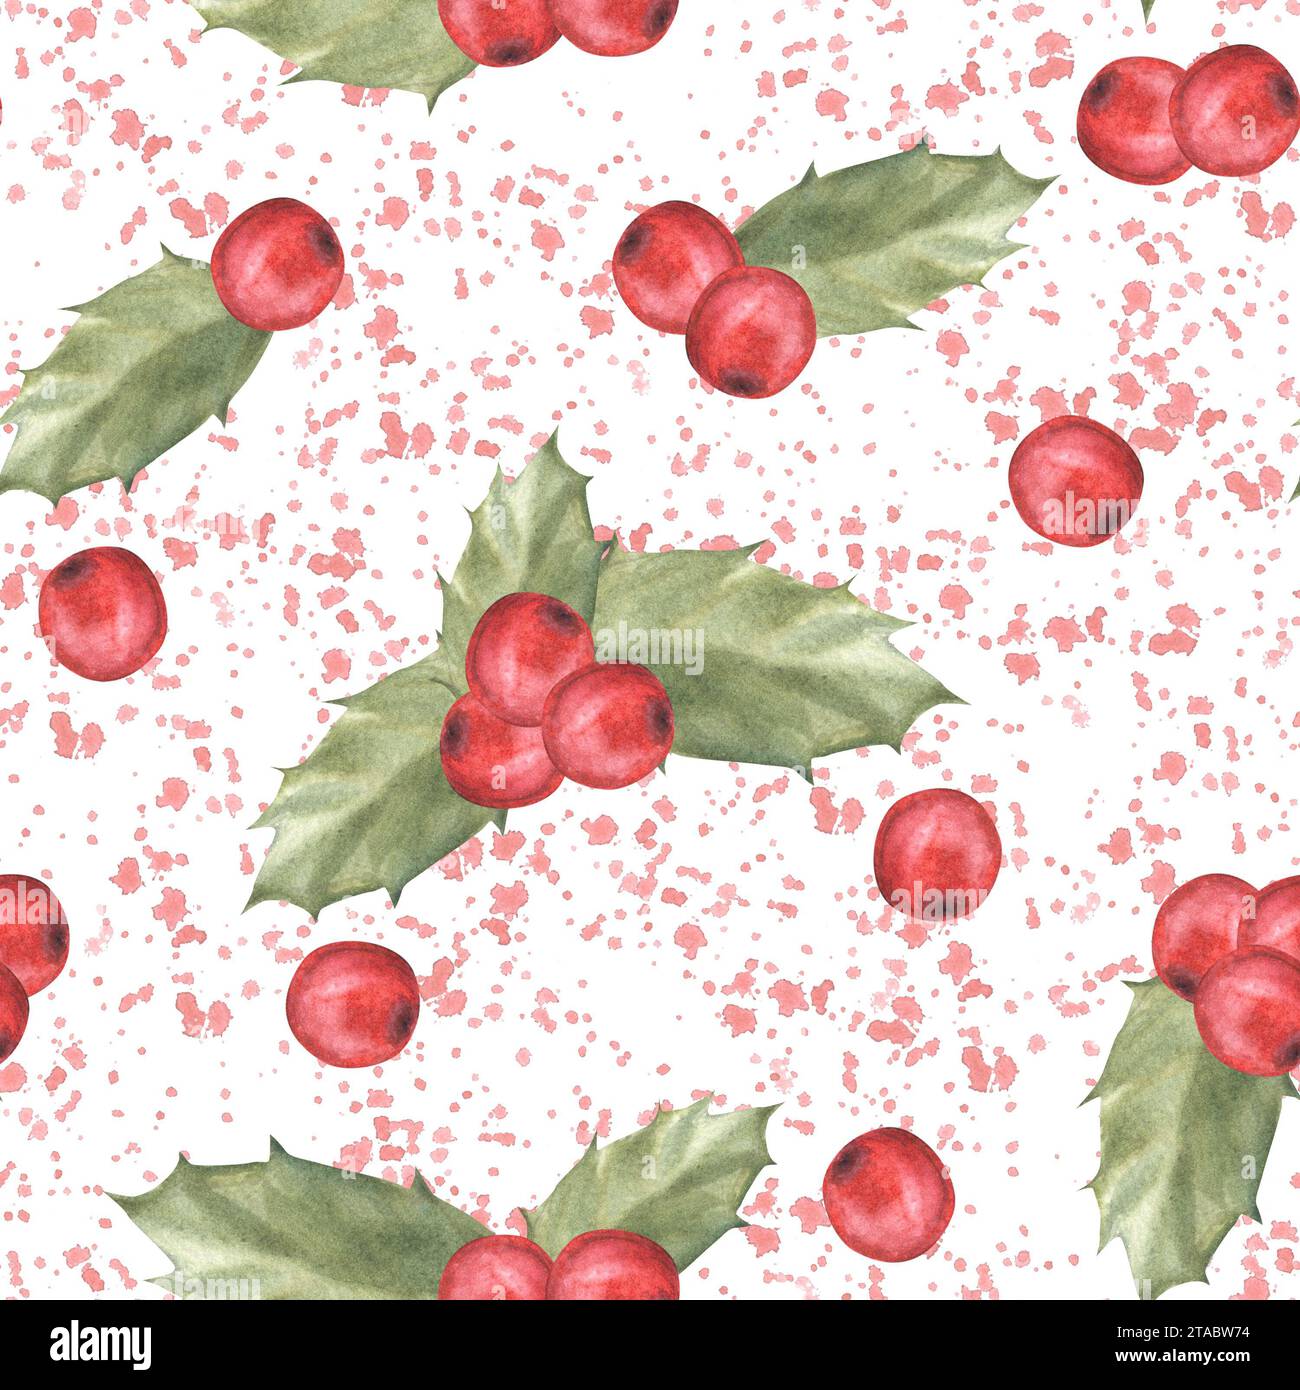 Aquarellgemalte Illustration von roten stechpalmenblättern und Beeren mit Spritzern. Nahtloses Muster. Clipart für Weihnachten oder Silvester Dekor, Geschenk Stockfoto